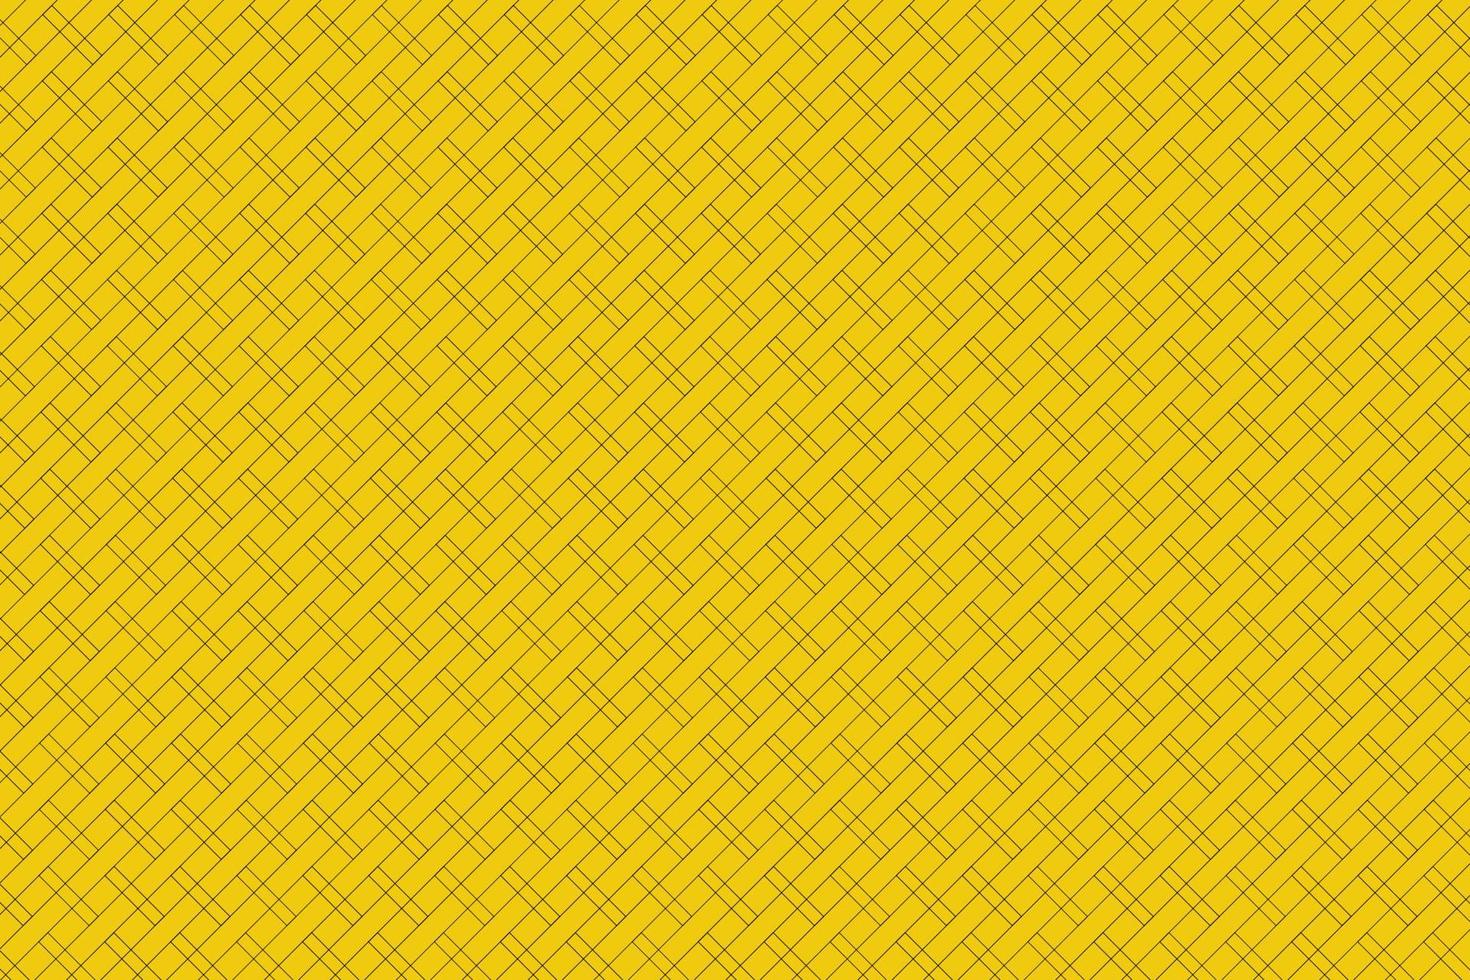 las rayas negras de fondo amarillo se cruzan en canales de igual tamaño que se pueden usar para diseñar trabajos en fondos de pantalla de vectores, etc. vector